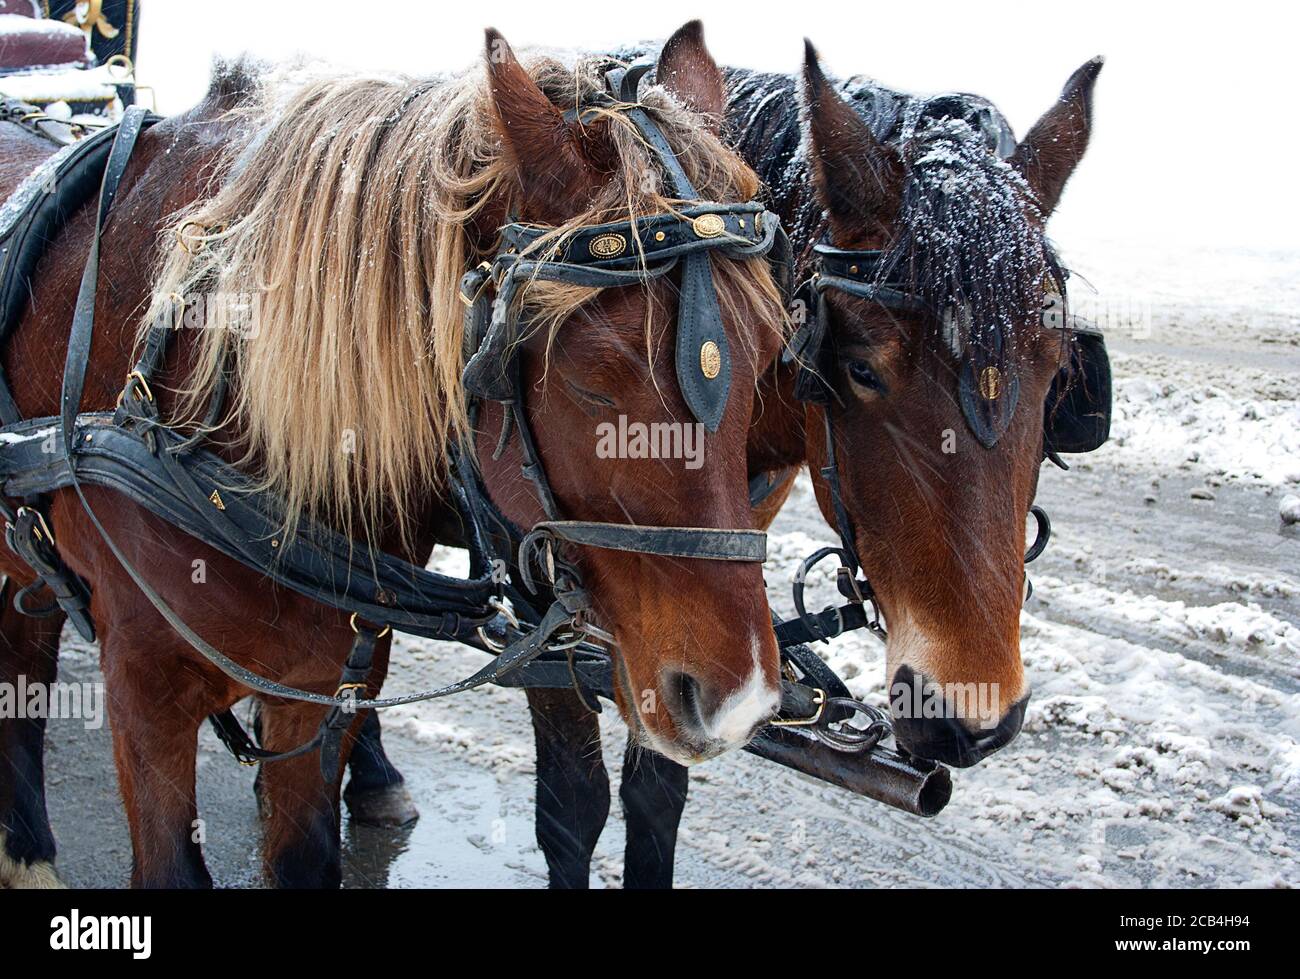 Zwei braune Pferde stehen auf der Straße und warten im Schneesturm, traurig und kalt. Stockfoto